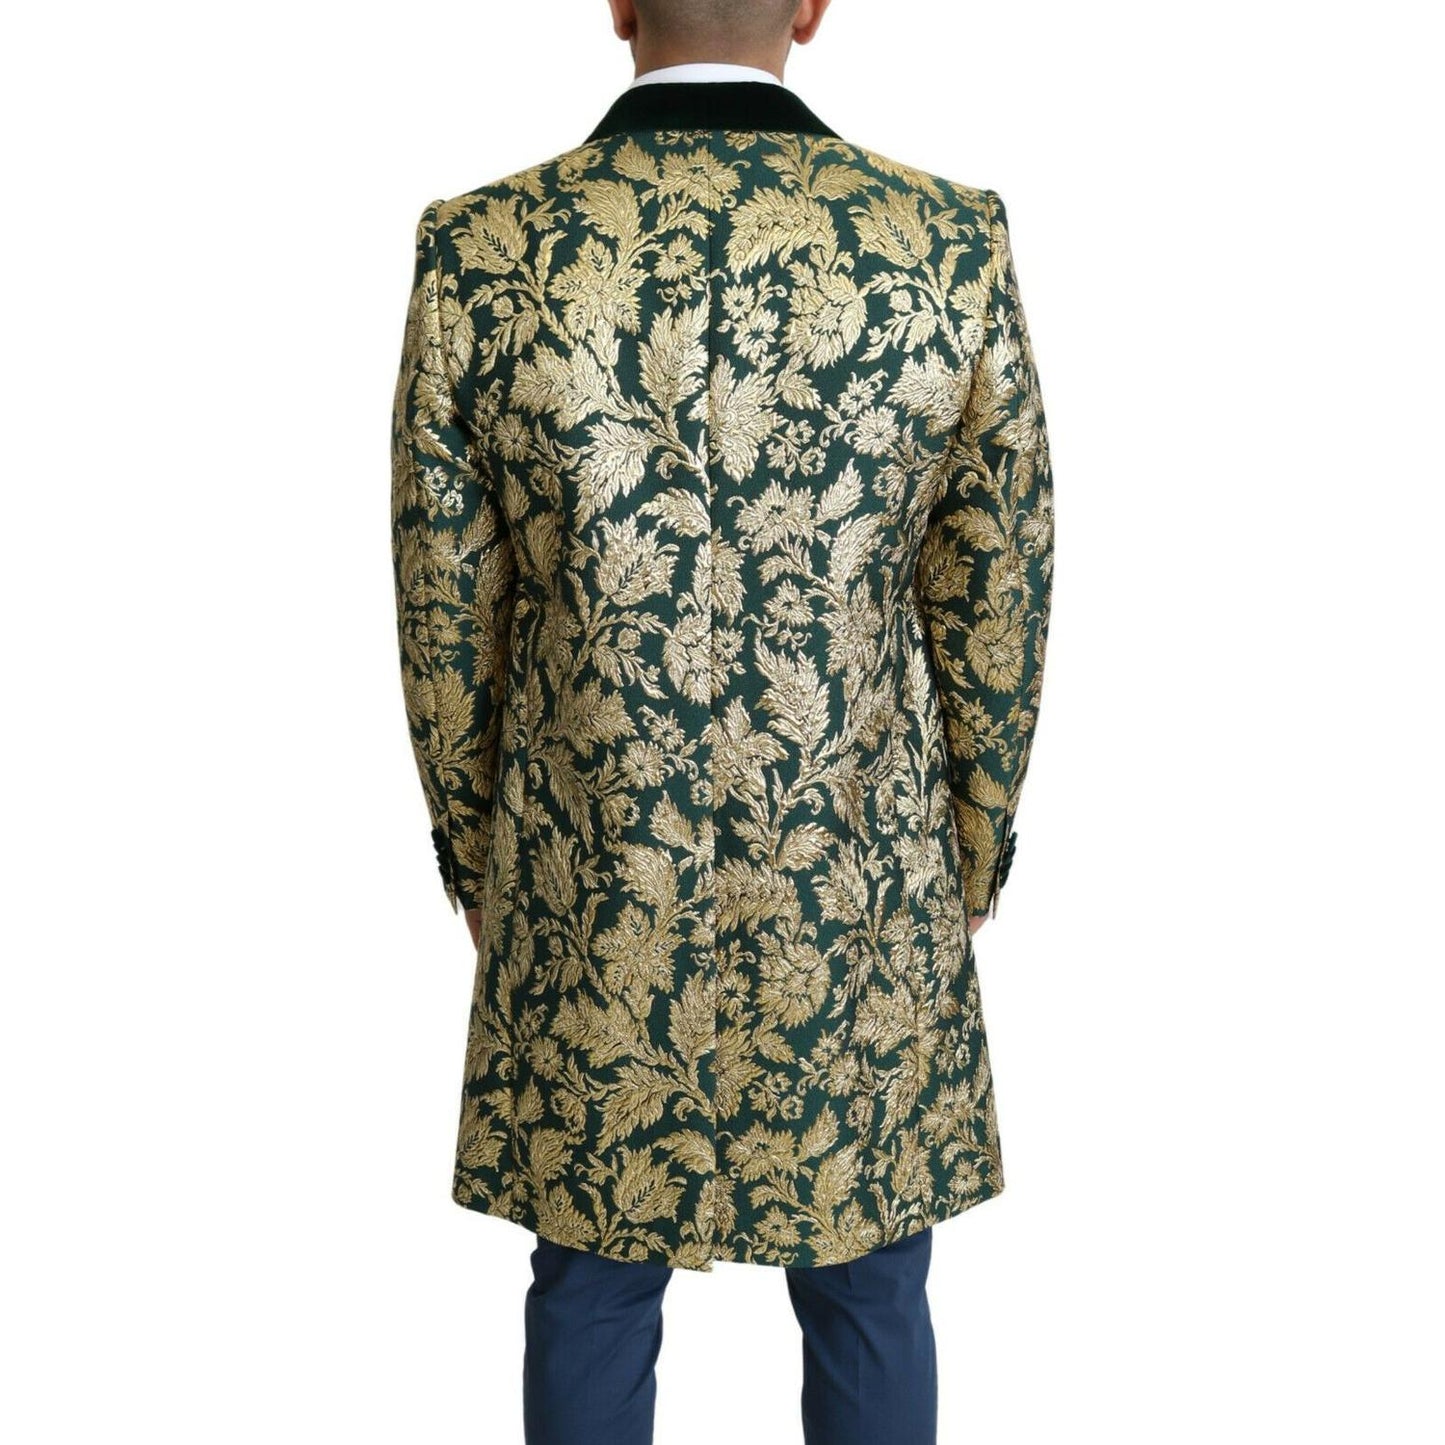 Dolce & Gabbana | Elegant Gold Green Jacquard Sicilia Jacket| McRichard Designer Brands   